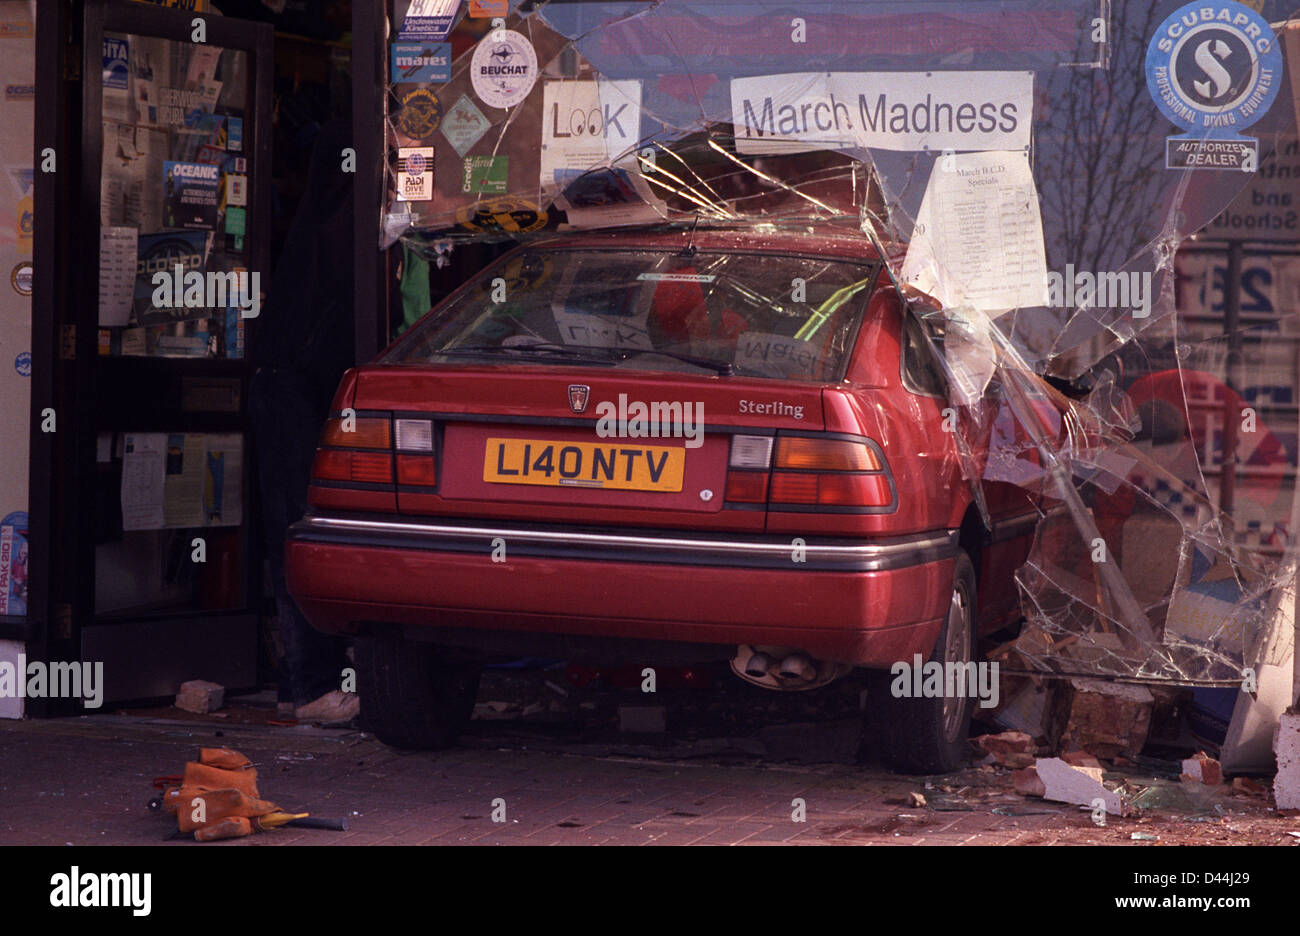 Une voiture rouge s'est écrasé accidentellement par un sous aqua shop window s'immobiliser au-dessous d'un 'March Madness' vente. Banque D'Images